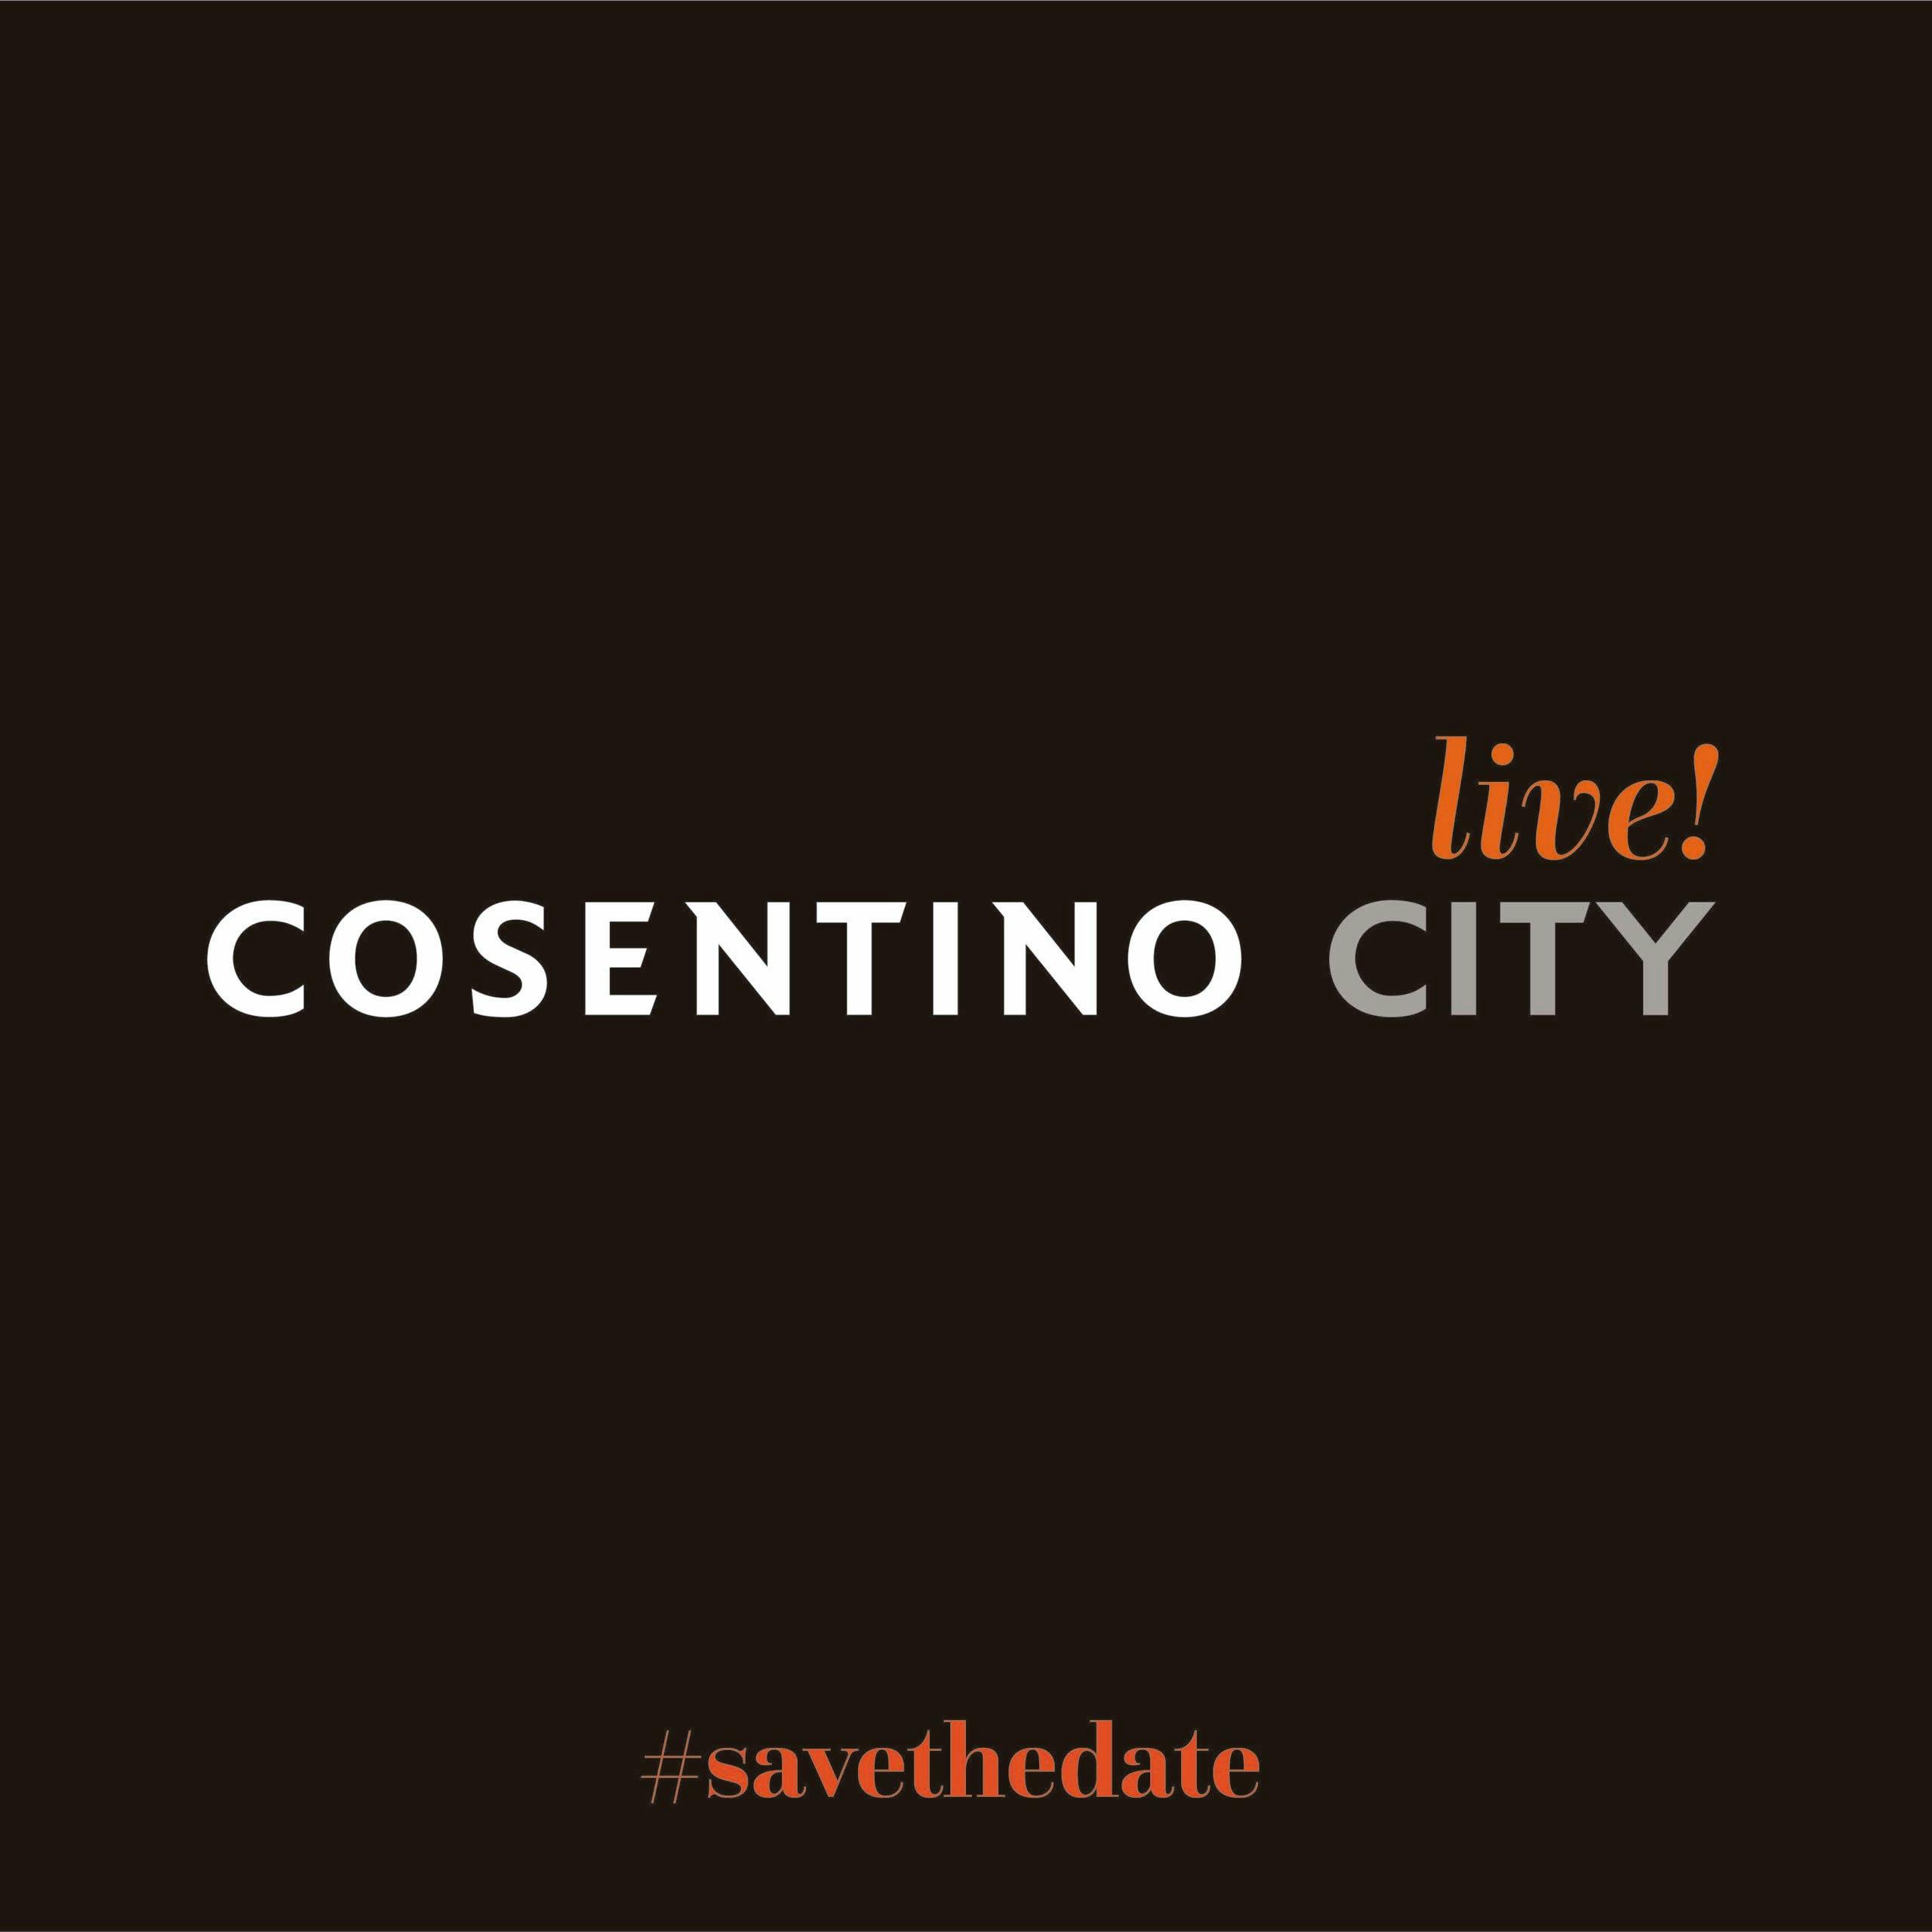 Imagen número 75 de "Cosentino City Live!", el mejor diseño desde casa